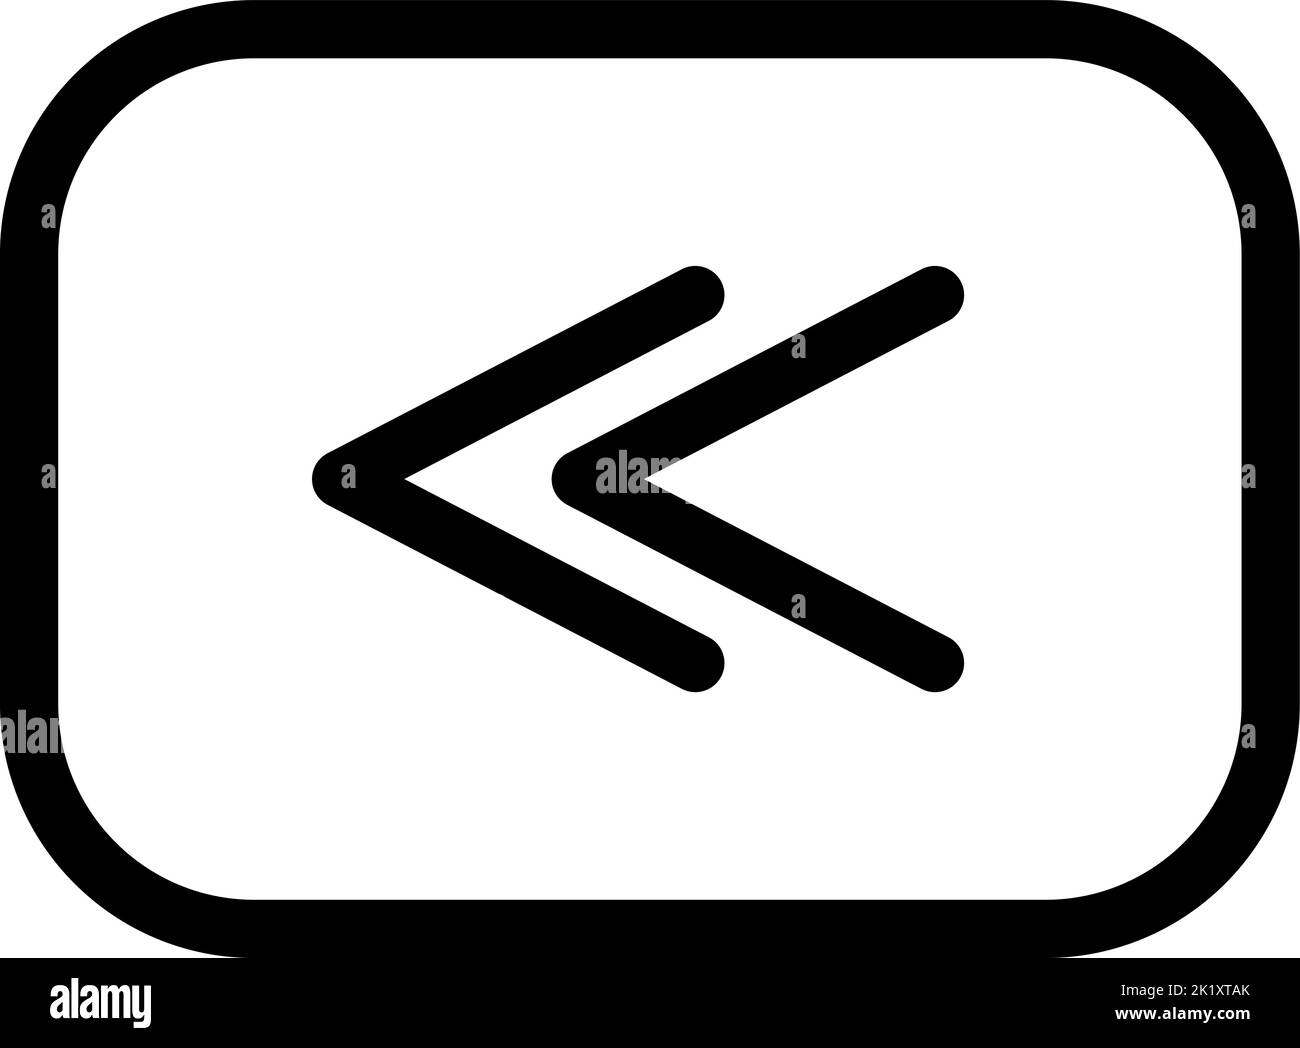 Icona del logo Professional Vector rewind. Stile Fast Symbol in Line Art per elementi di design, presentazione di siti Web o applicazioni mobili. Illustrazione dei segnali. Pixel Illustrazione Vettoriale